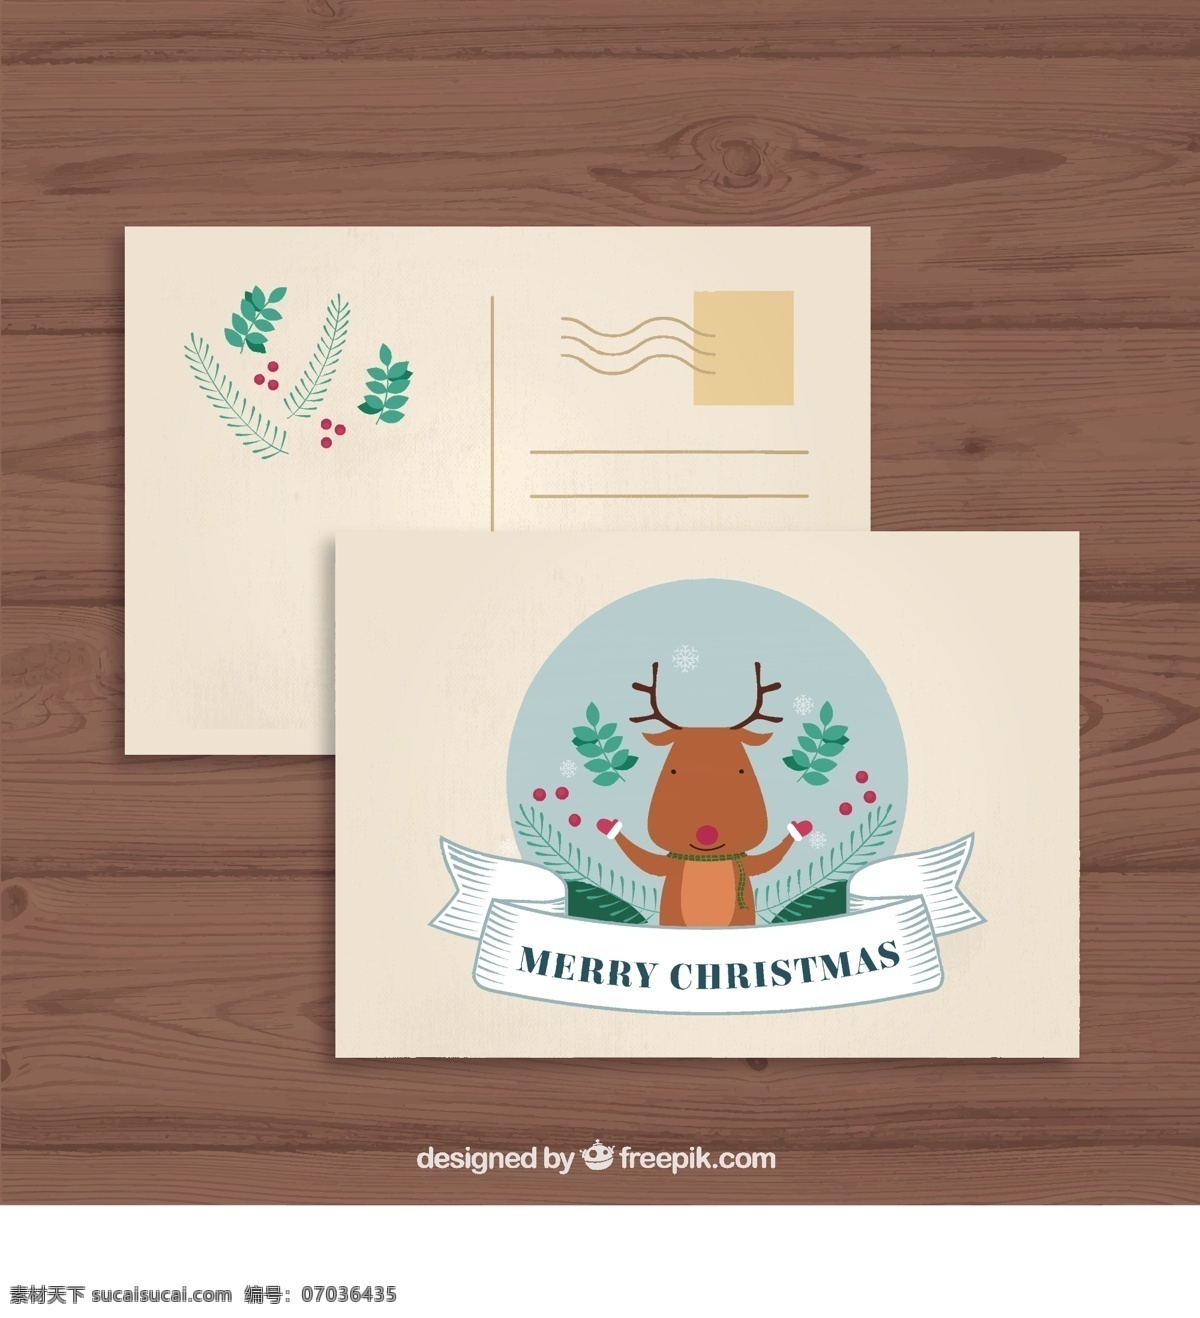 圣诞 驯鹿 明信片 圣诞节 动物 快乐 冬季 可爱的 庆祝 假日 节日 可爱 季节 问候 漂亮 风流